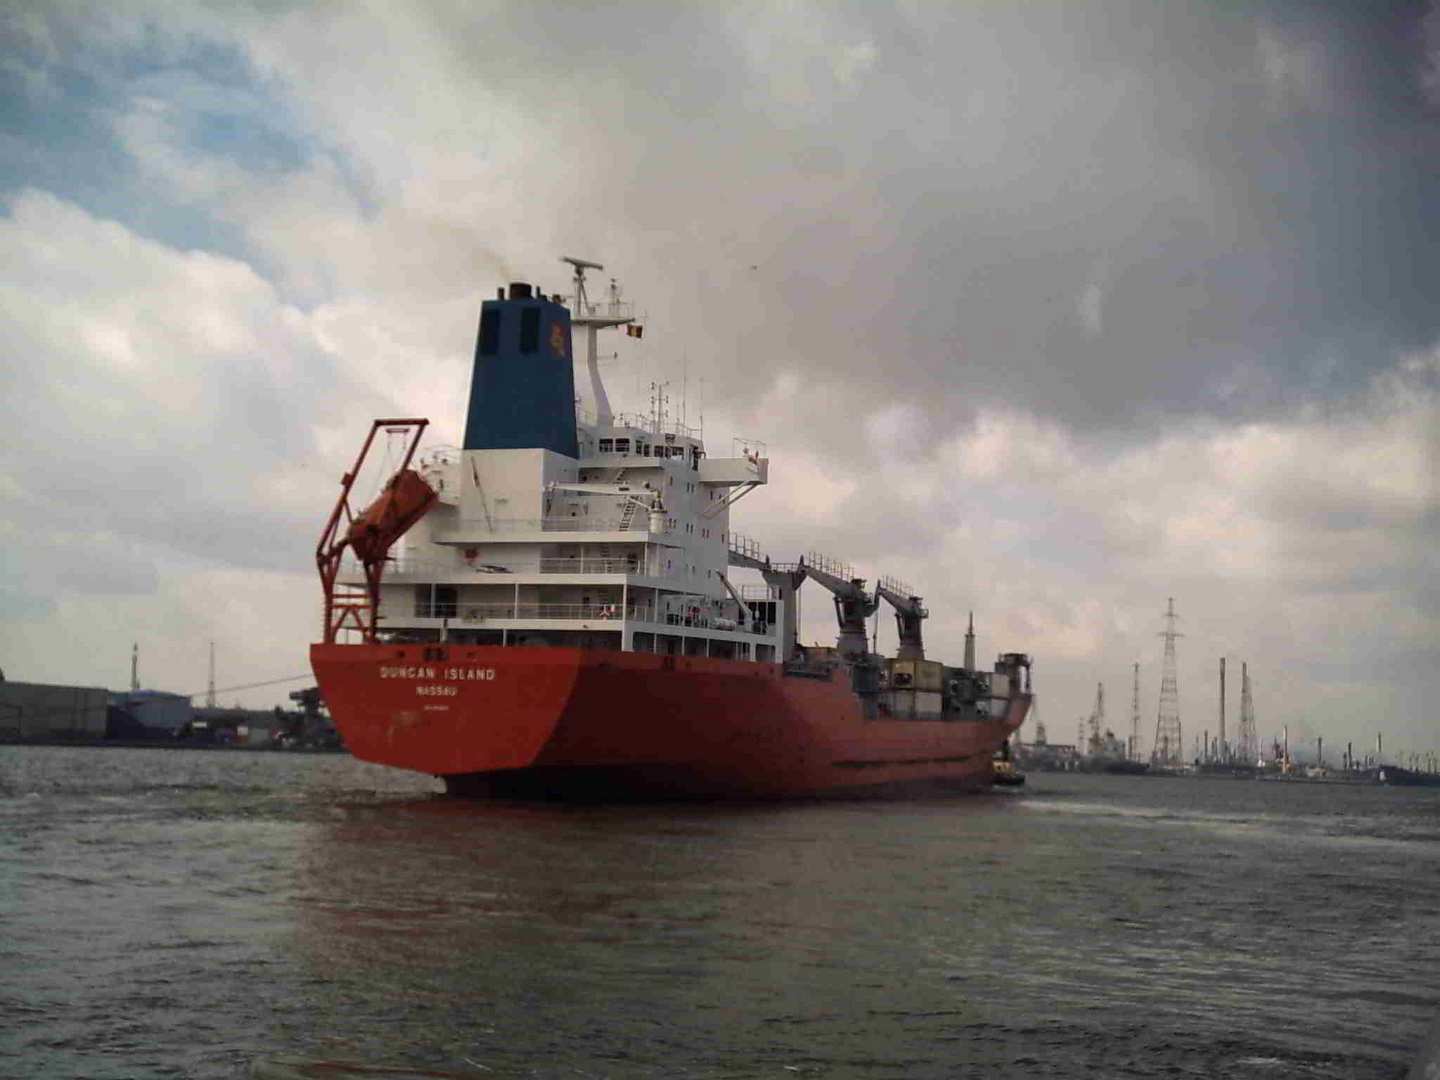 Frachter im Hafen von Antwerpen